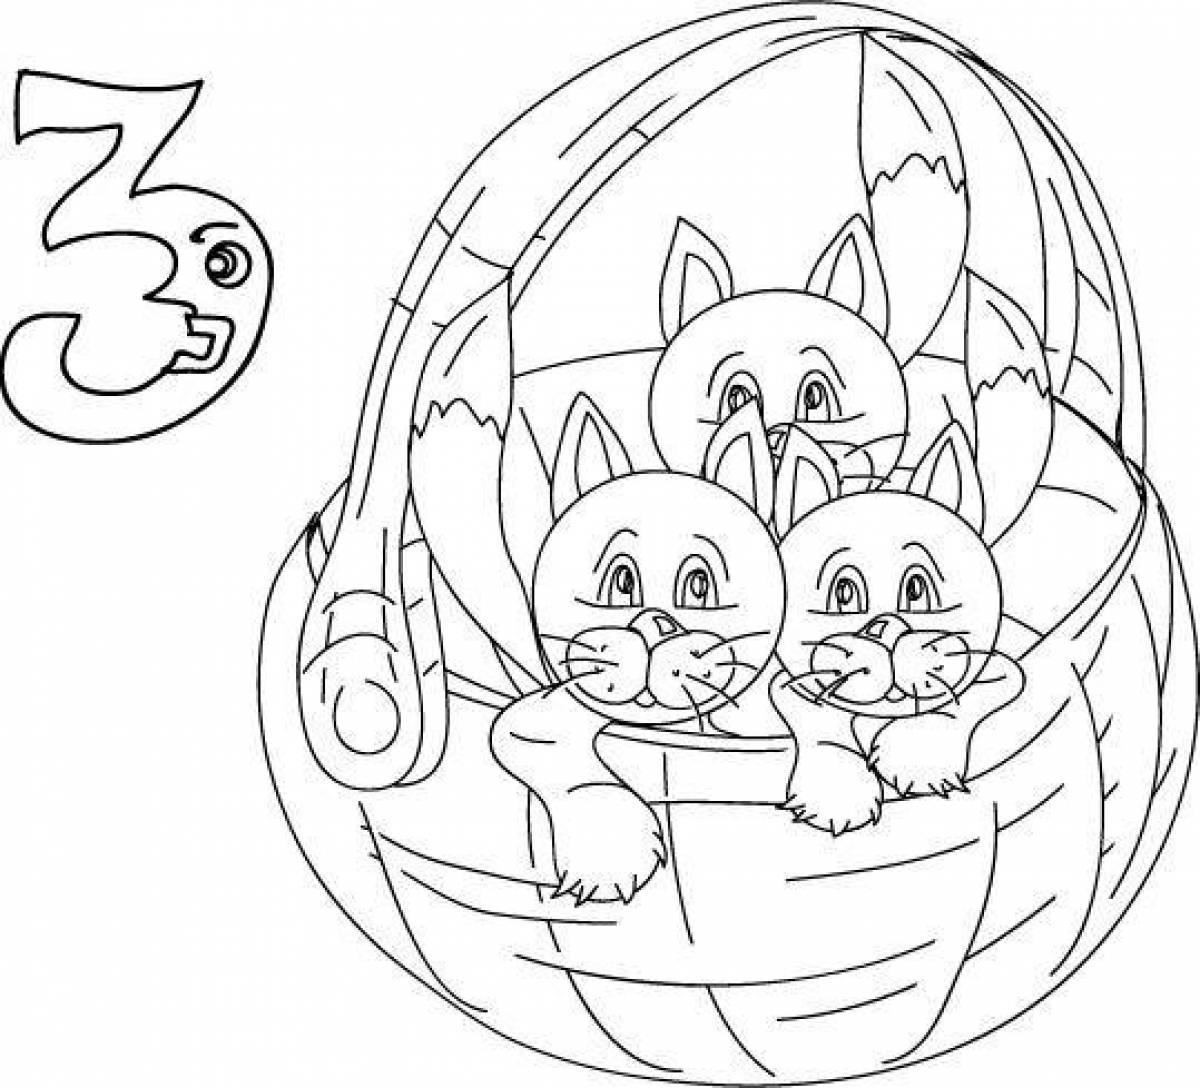 Котята в корзинке раскраска для детей